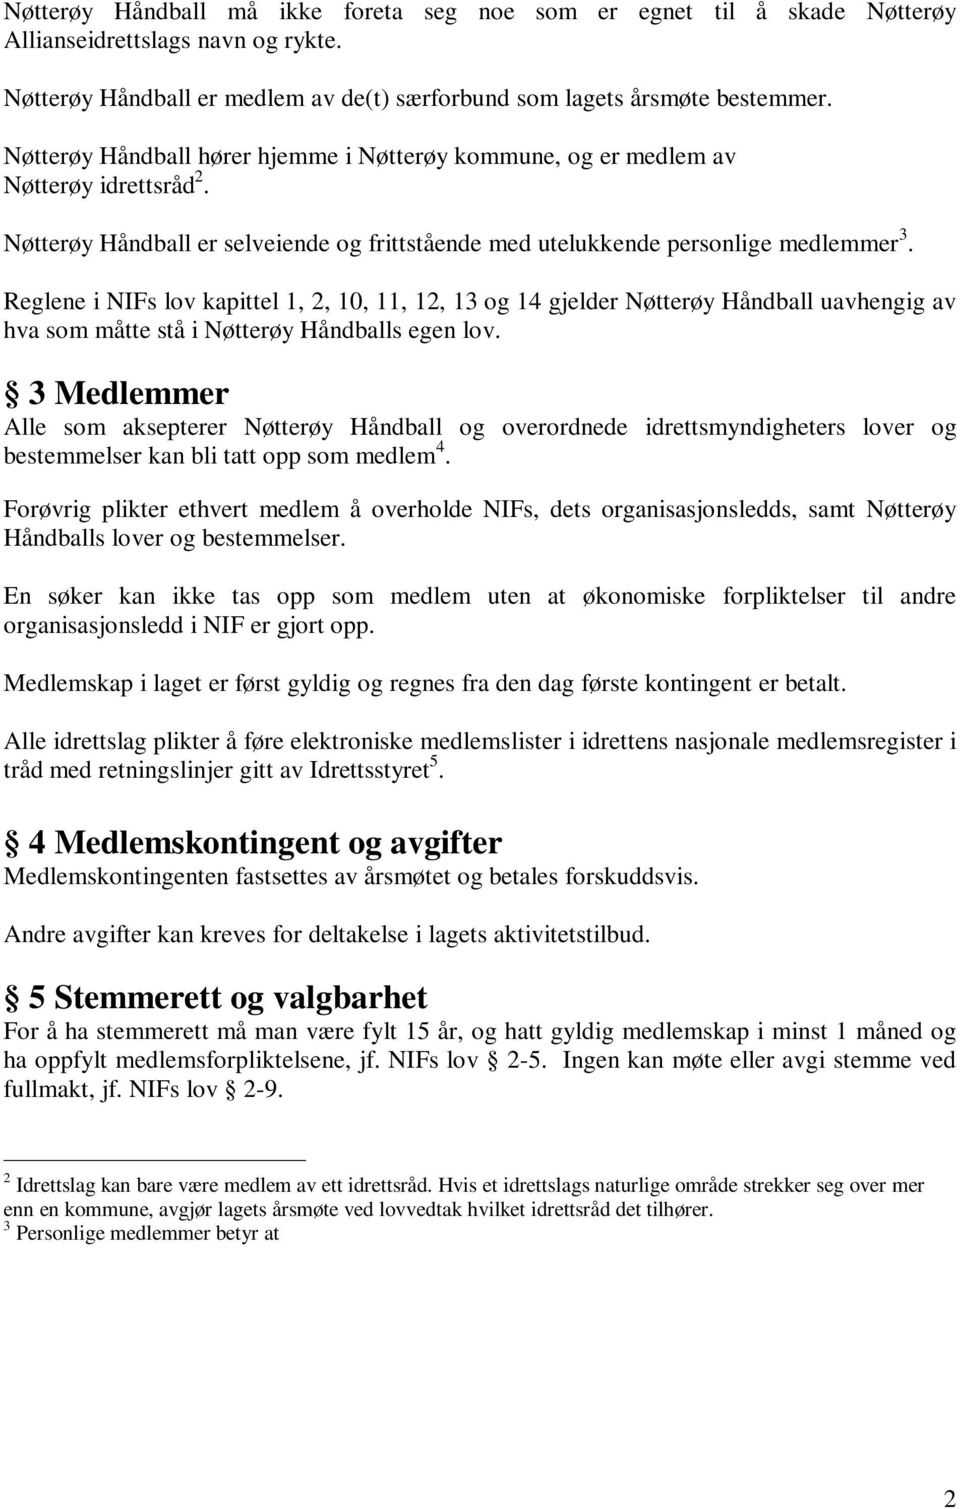 Reglene i NIFs lov kapittel 1, 2, 10, 11, 12, 13 og 14 gjelder Nøtterøy Håndball uavhengig av hva som måtte stå i Nøtterøy Håndballs egen lov.